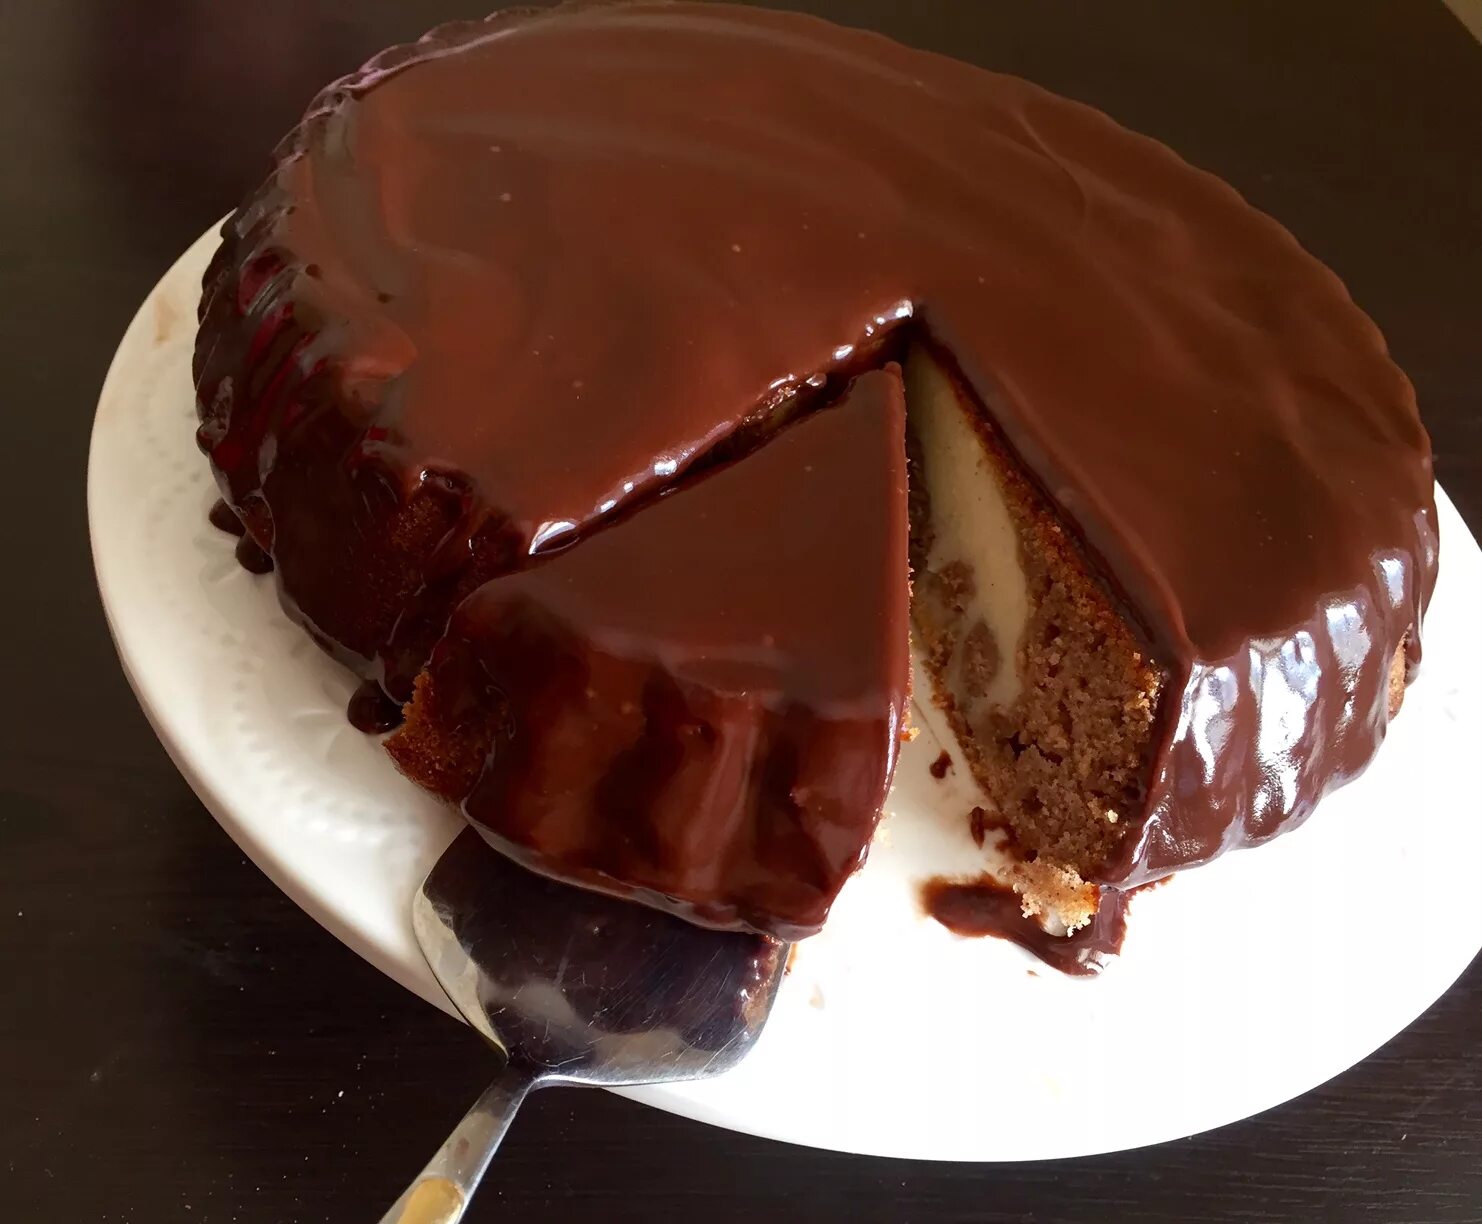 Пирог с шоколадной глазурью. Торт с шоколадной глазурью. Кекс с шоколадной глазурью. Шоколадный пирог с шоколадной глазурью.